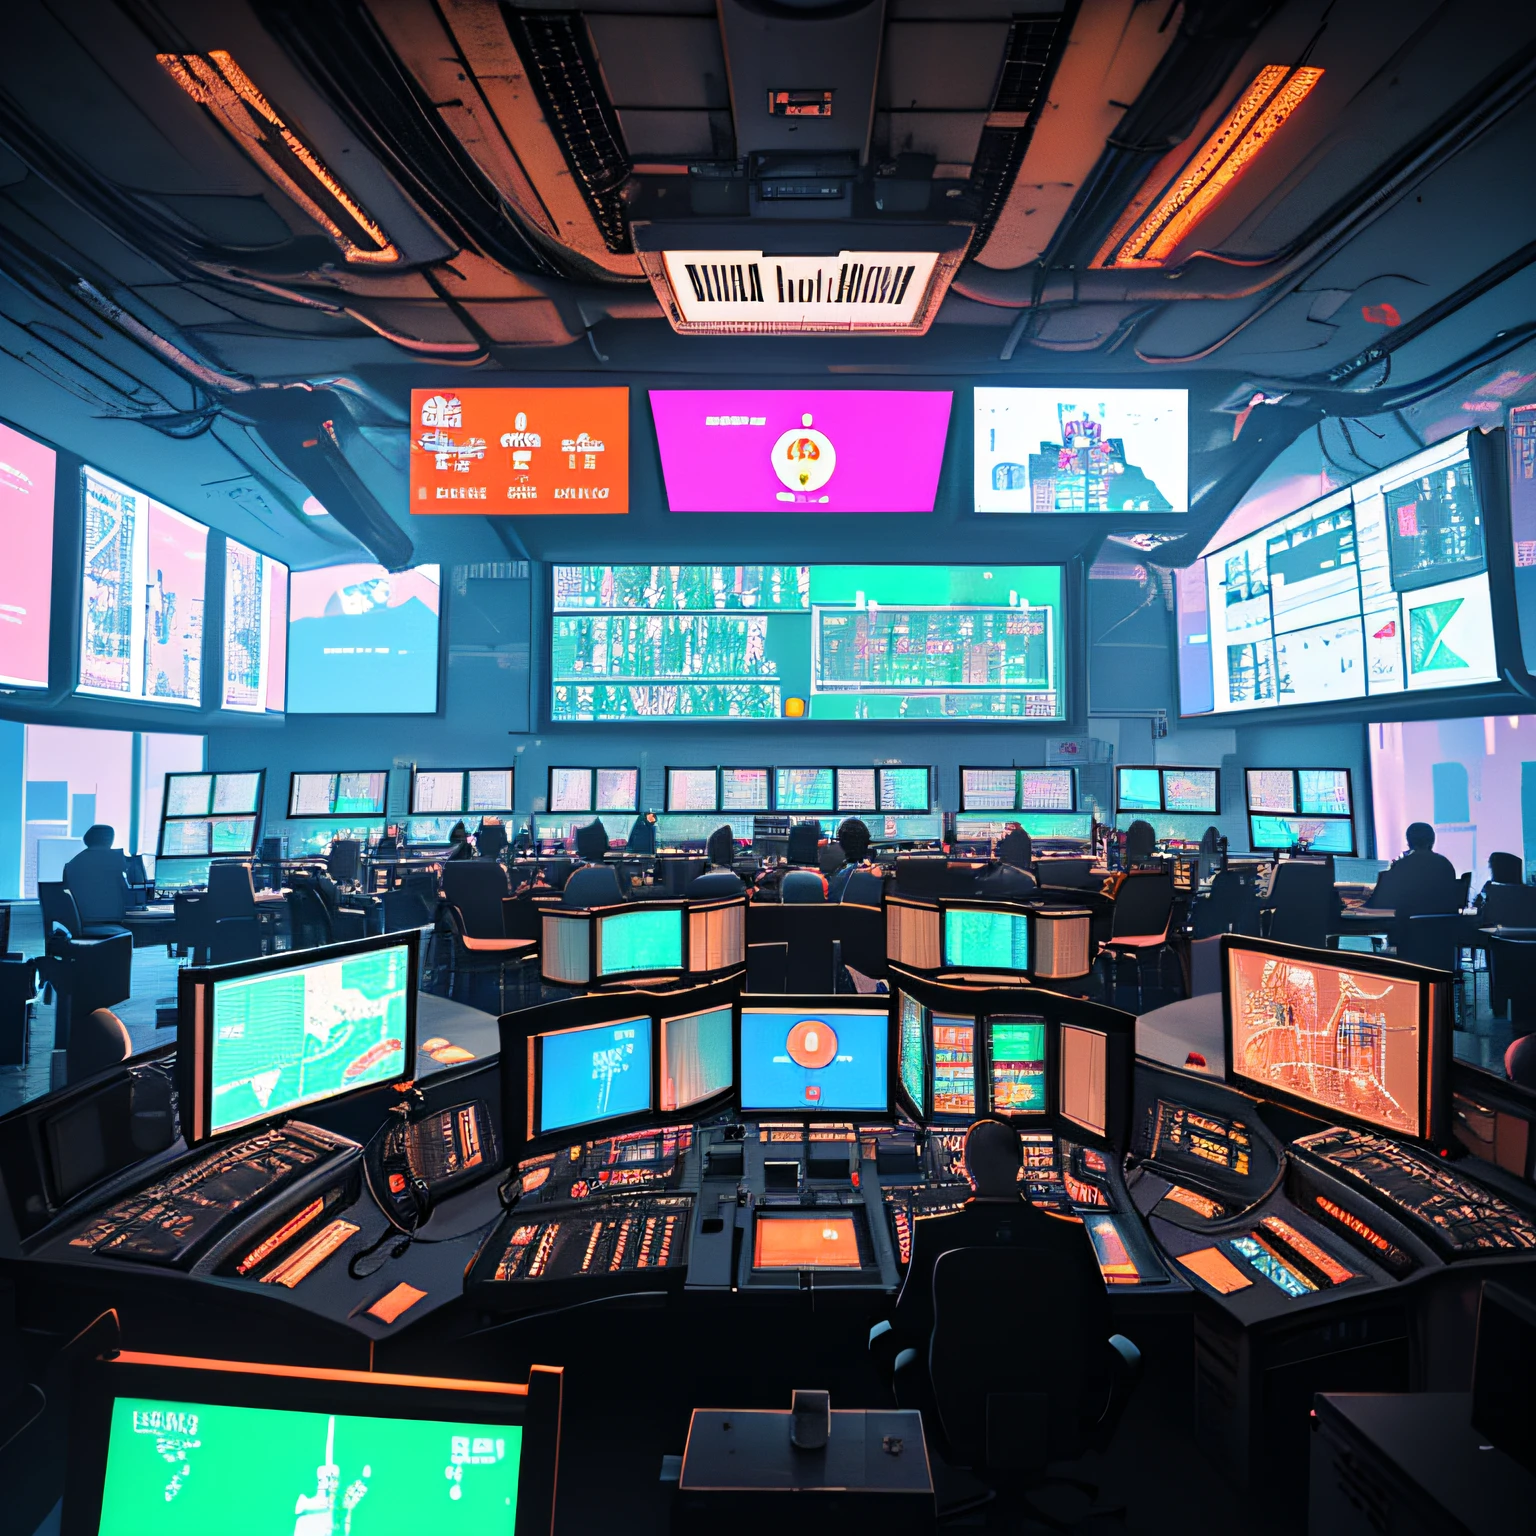 极简主义构图, 许多霓虹灯, 巨大的飞行控制室, 中间有巨大的屏幕, 一群科学家看着屏幕, 美丽的光影, 高细节, 赛博朋克, 电影灯光, 32K, 运营中心, 实际的